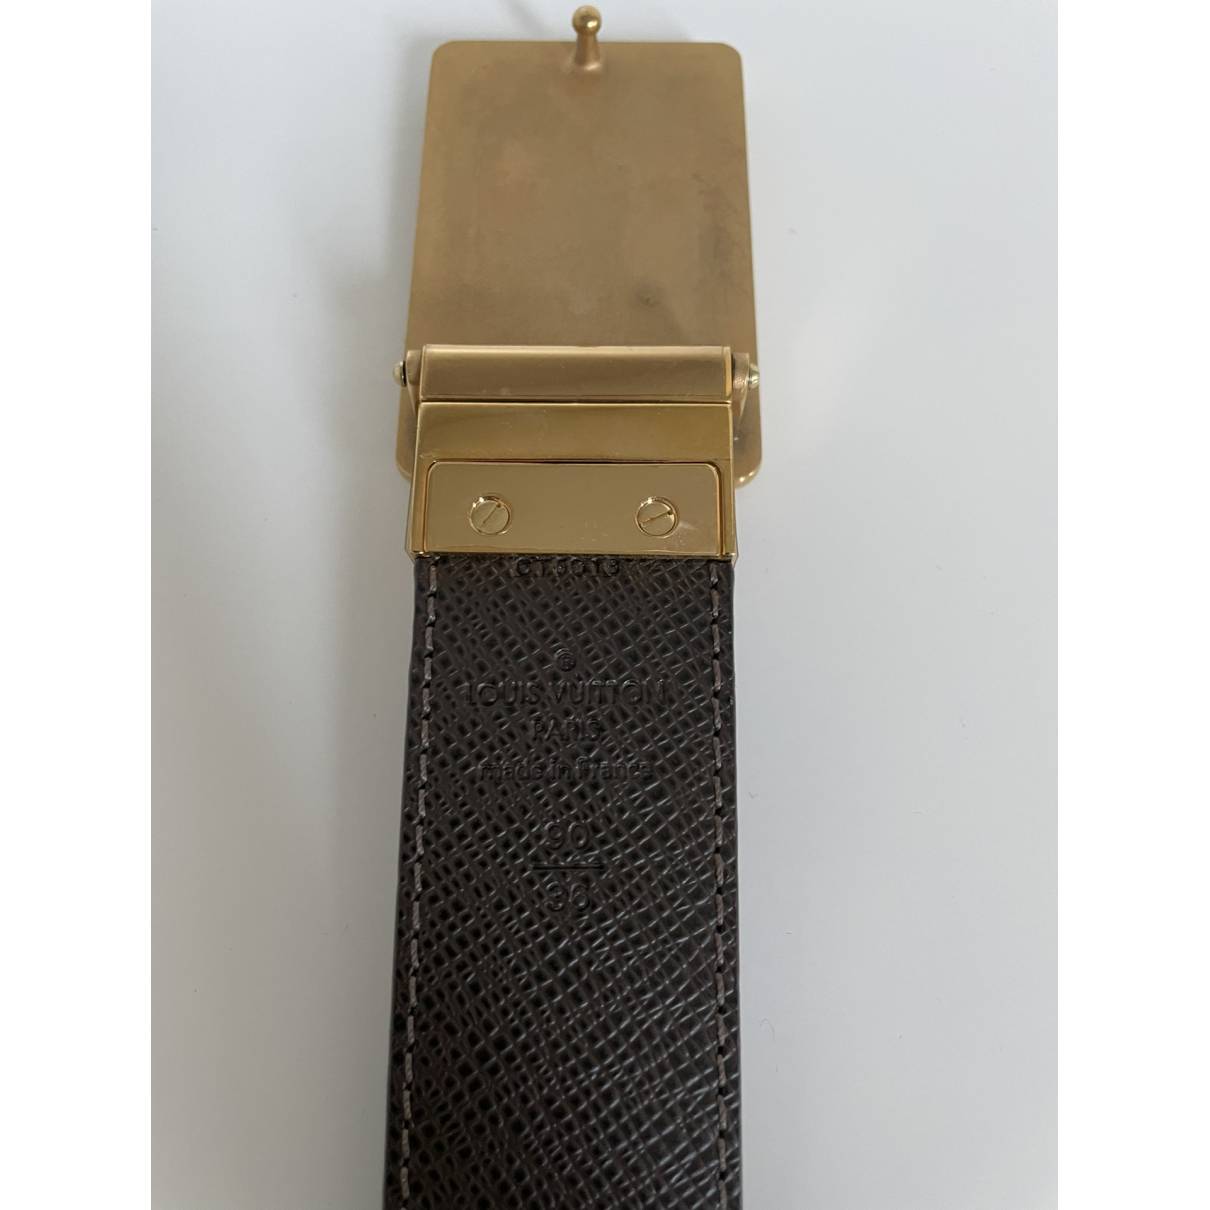 Louis Vuitton Men's Authenticated Belt